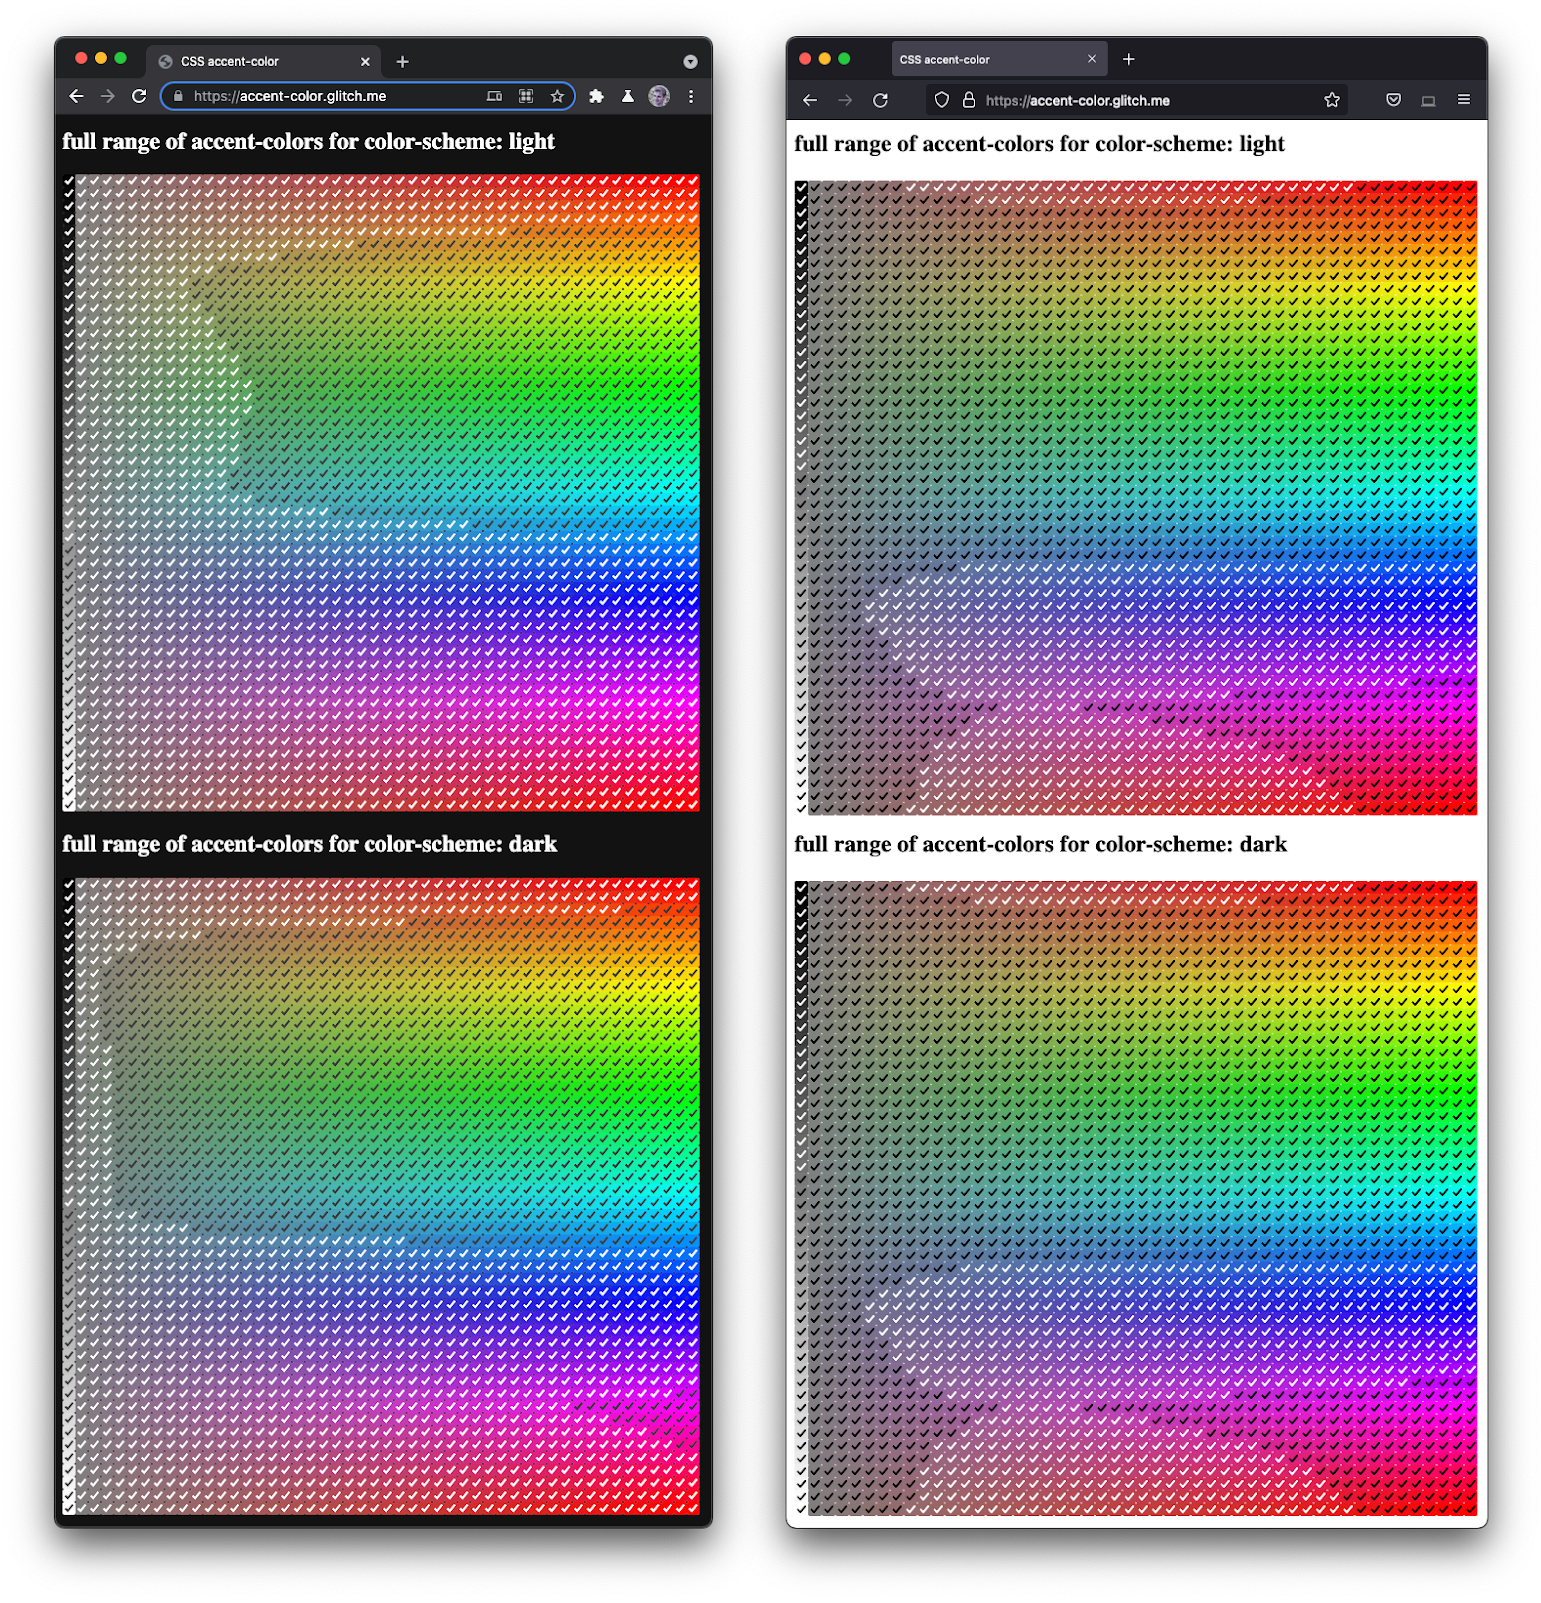 צילום מסך של Firefox ו-Chromium זה לצד זה,
  ויוצרים מגוון רחב של תיבות סימון בגוונים ובגוונים כהים.